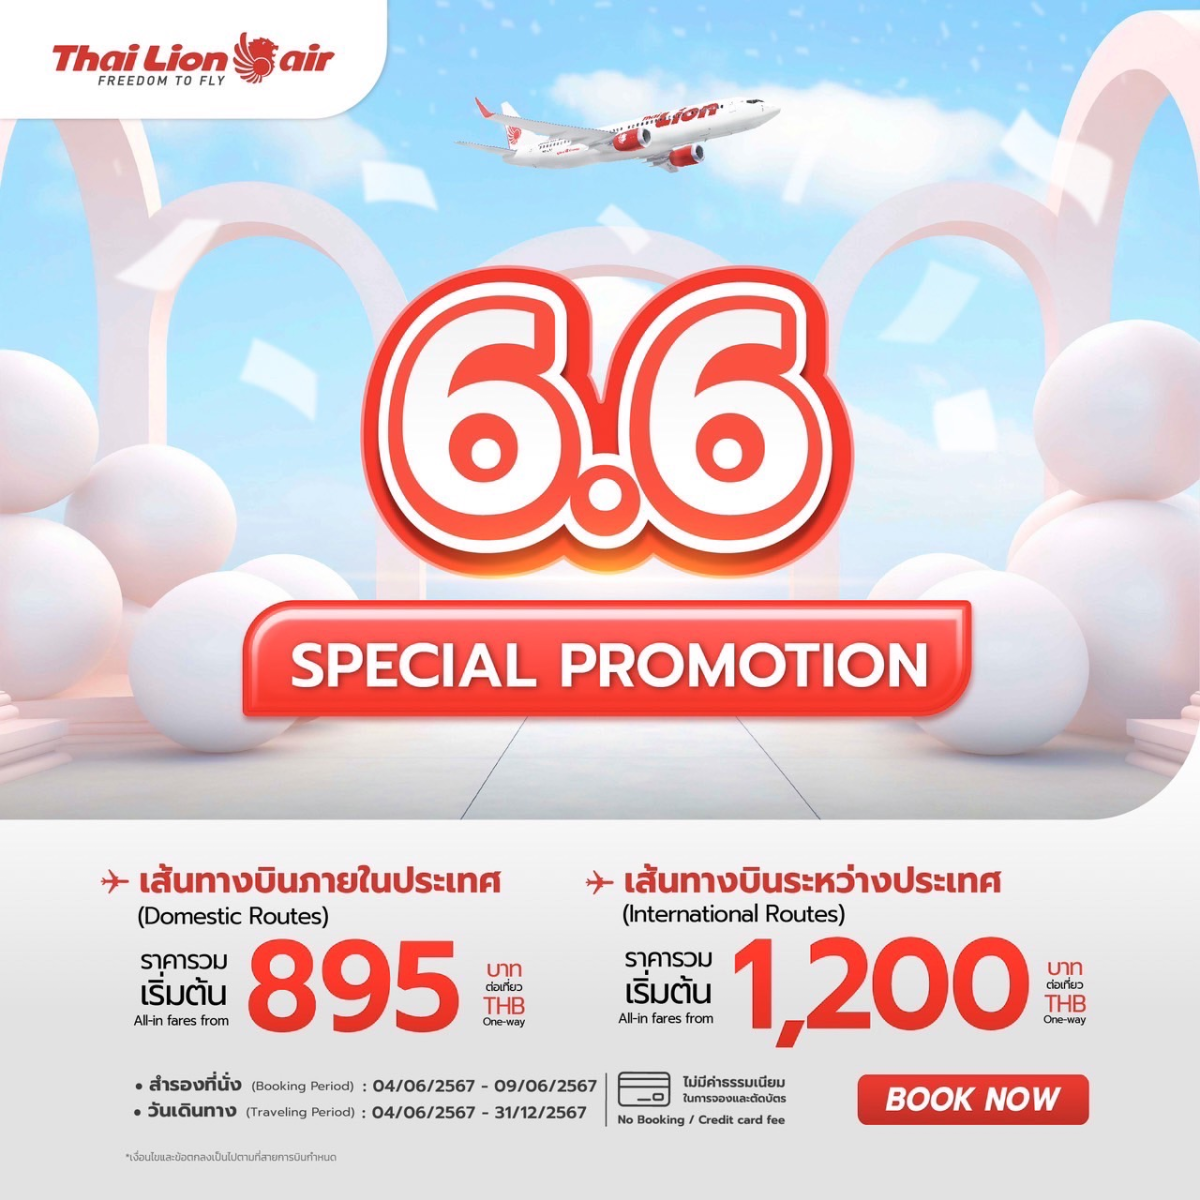 สายการบินไทย ไลอ้อน แอร์ จัดโปรโมชั่นราคาพิเศษ 6.6 SPECIAL PROMOTION ในเดือนมิถุนายน